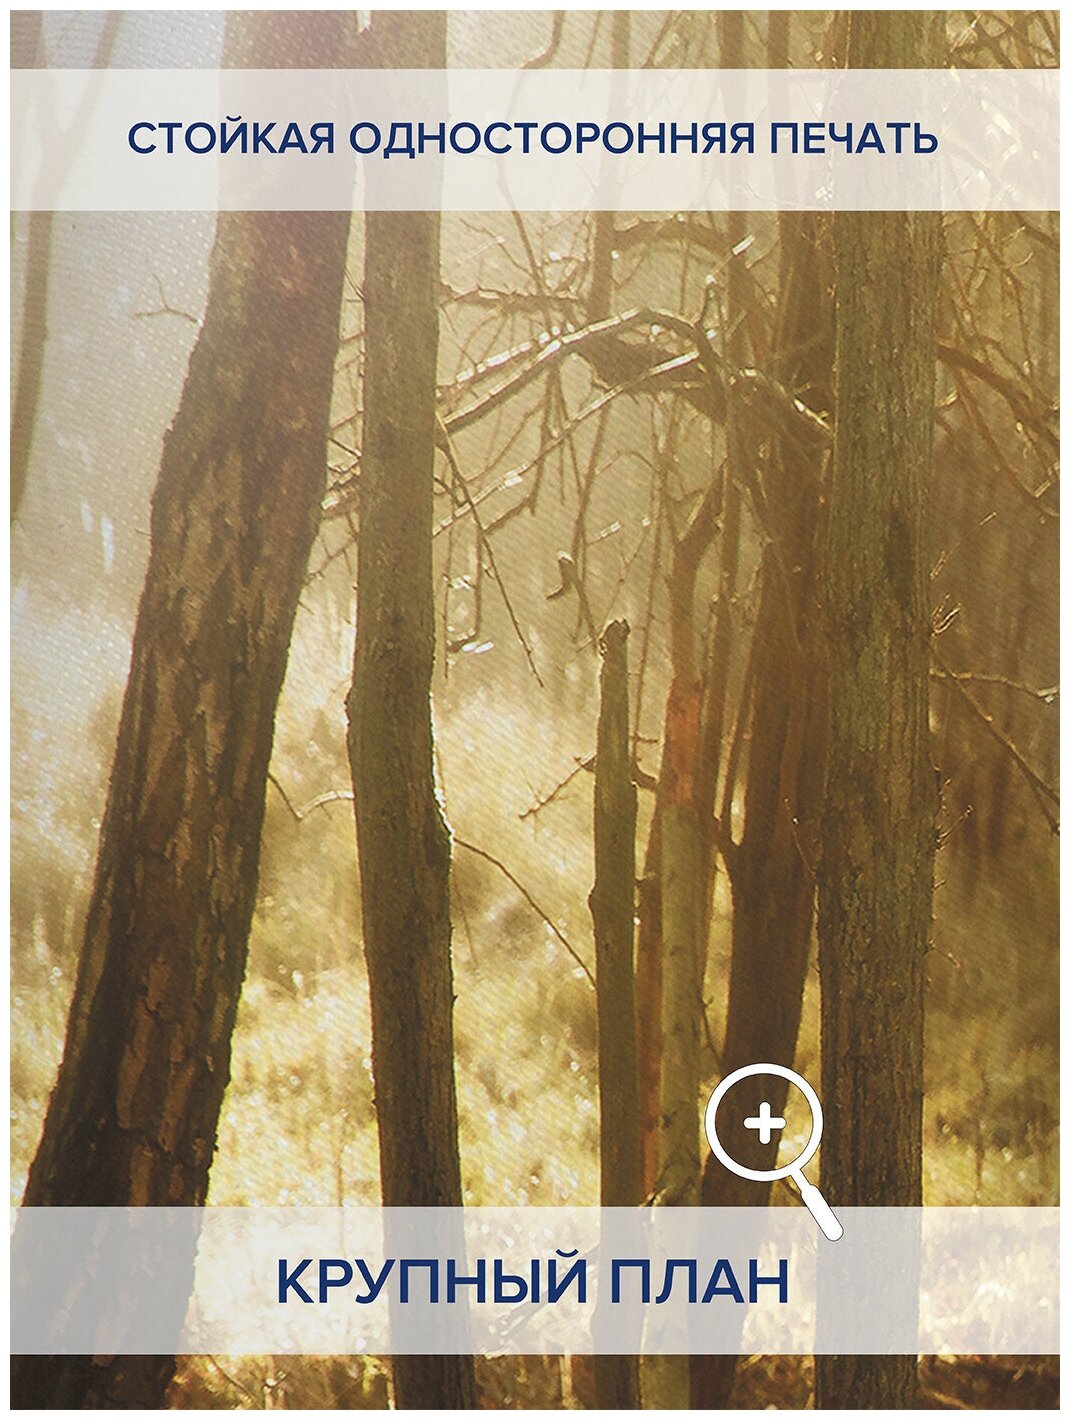 Шторы, фотошторы JoyArty "Олененок в лесу” из ткани оксфорд, 2 полотна шириной по 170 см, высота 265 см, шторная лента и крючки, степень затемнения 70% - фотография № 2